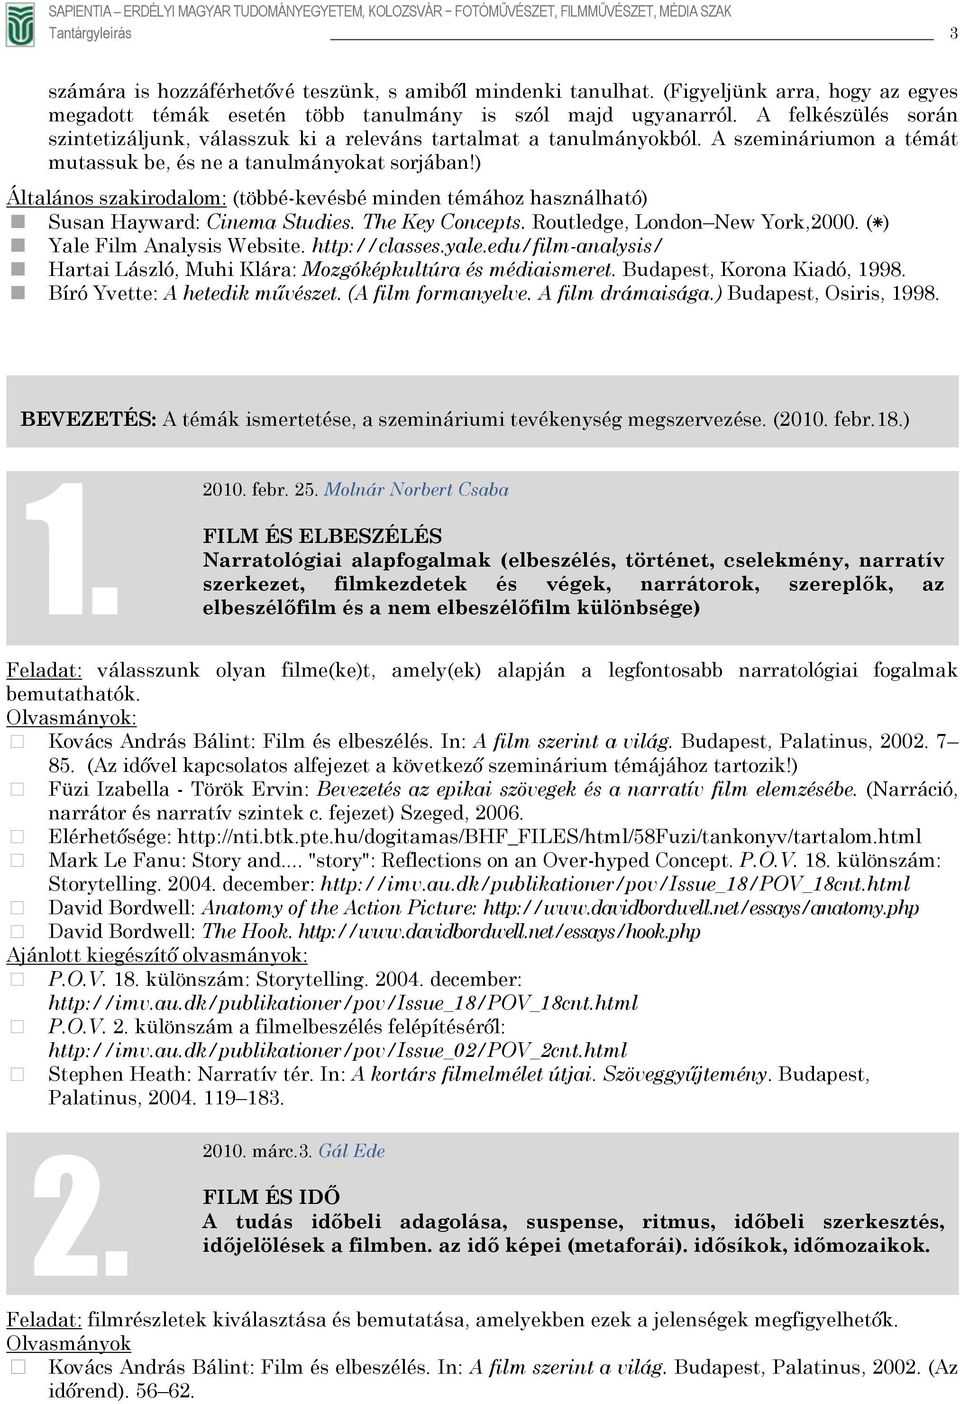 ) Általános szakirodalom: (többé-kevésbé minden témához használható) ( ) York,2000. Susan Hayward: Cinema Studies. The Key Concepts. Routledge, London New Yale Film Analysis Website. http://classes.